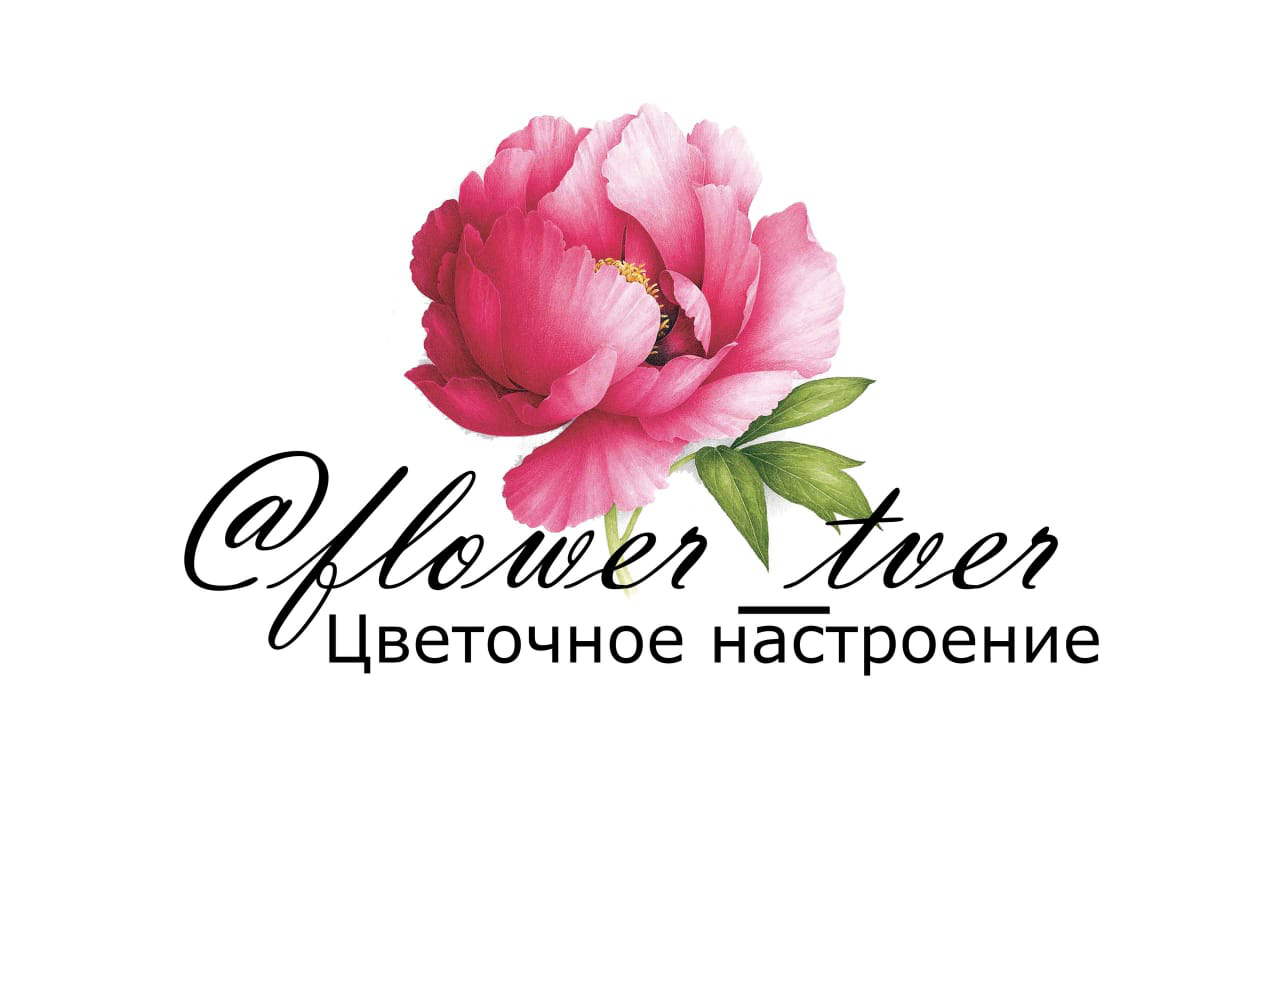 Валберисе купить интернет магазин цветы. Баннер цветочного магазина. Реклама цветов. Реклама цветочного магазина. Цветы реклама.